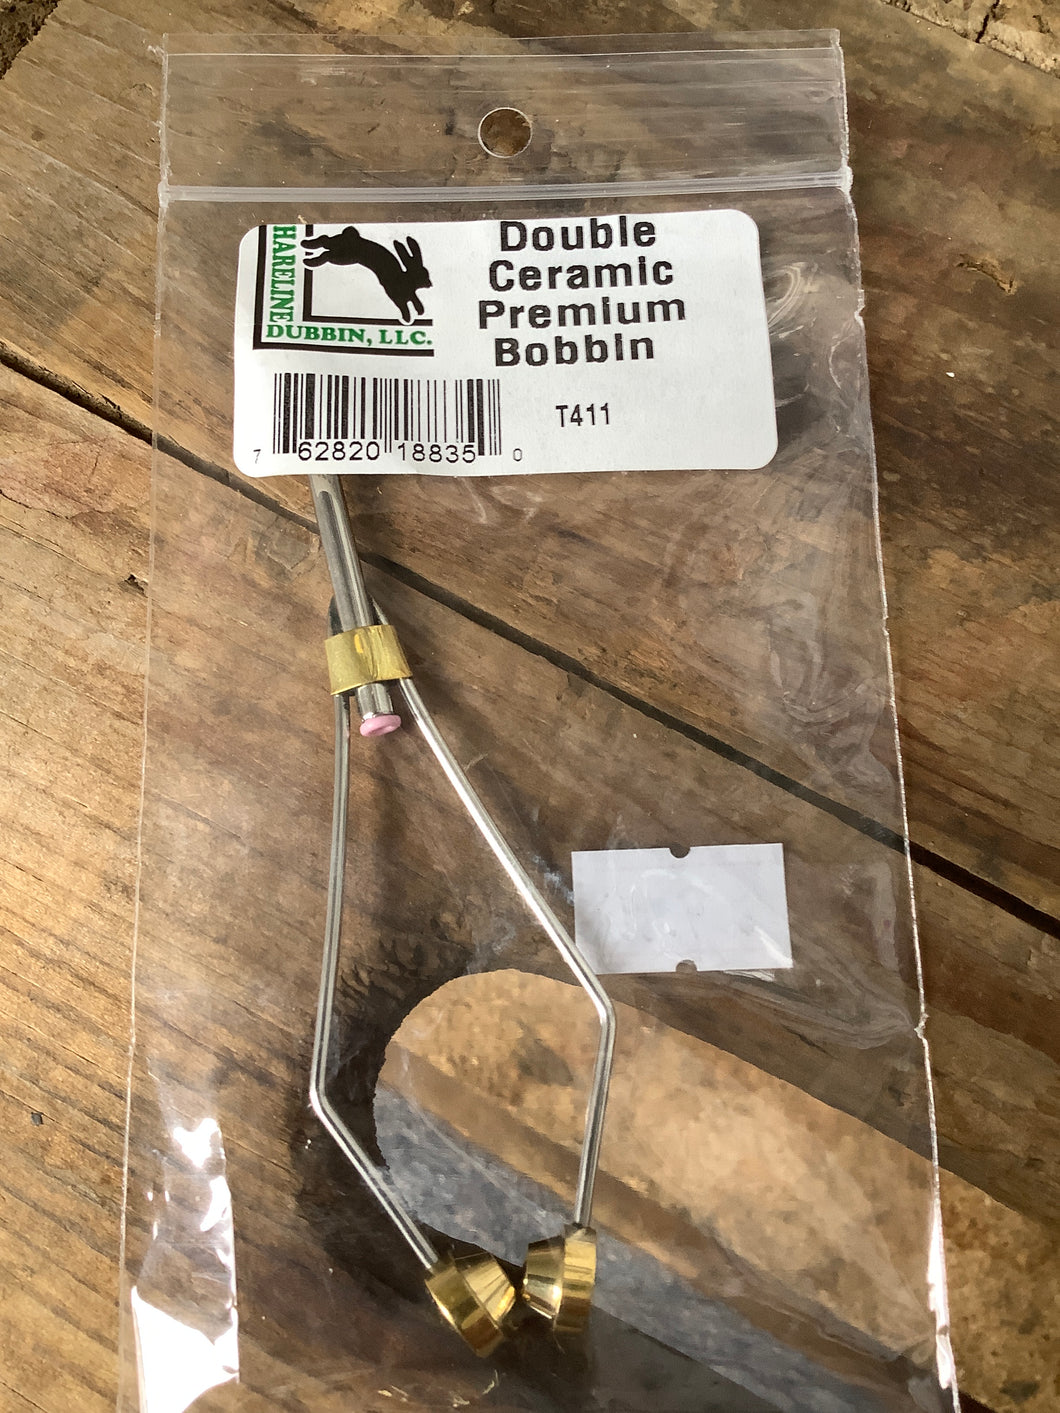 Double Ceramic Premium Bobbin